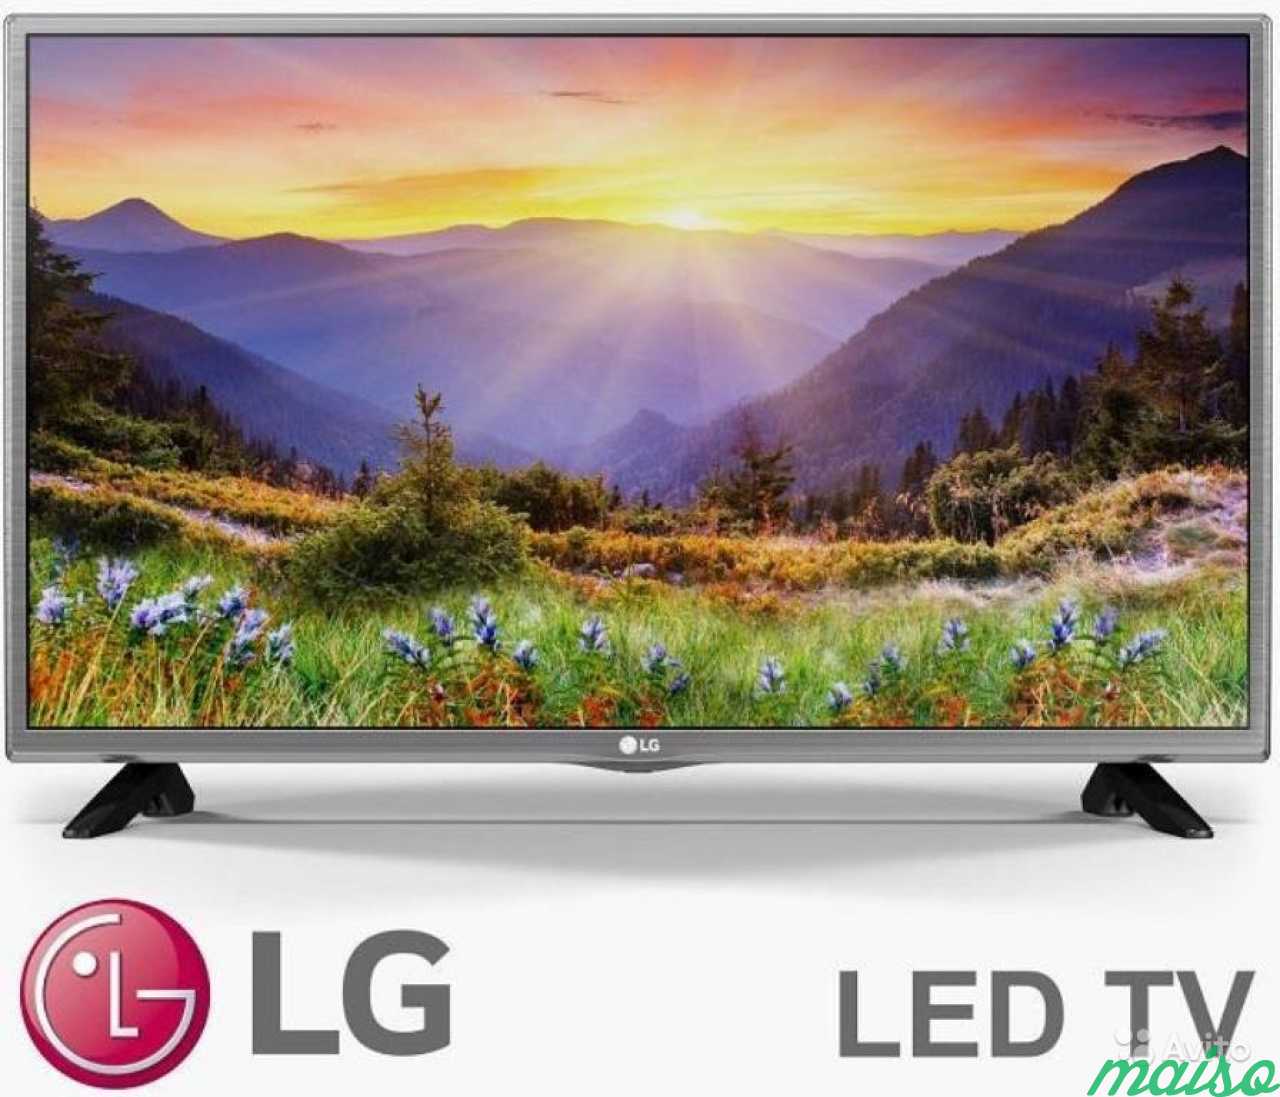 Телевизор lg 81 см. LG 32lh519u. 32" Телевизор LG 32lh513u led. Телевизор LG 32 Full LG led Smart TV. LG 32lf510u.